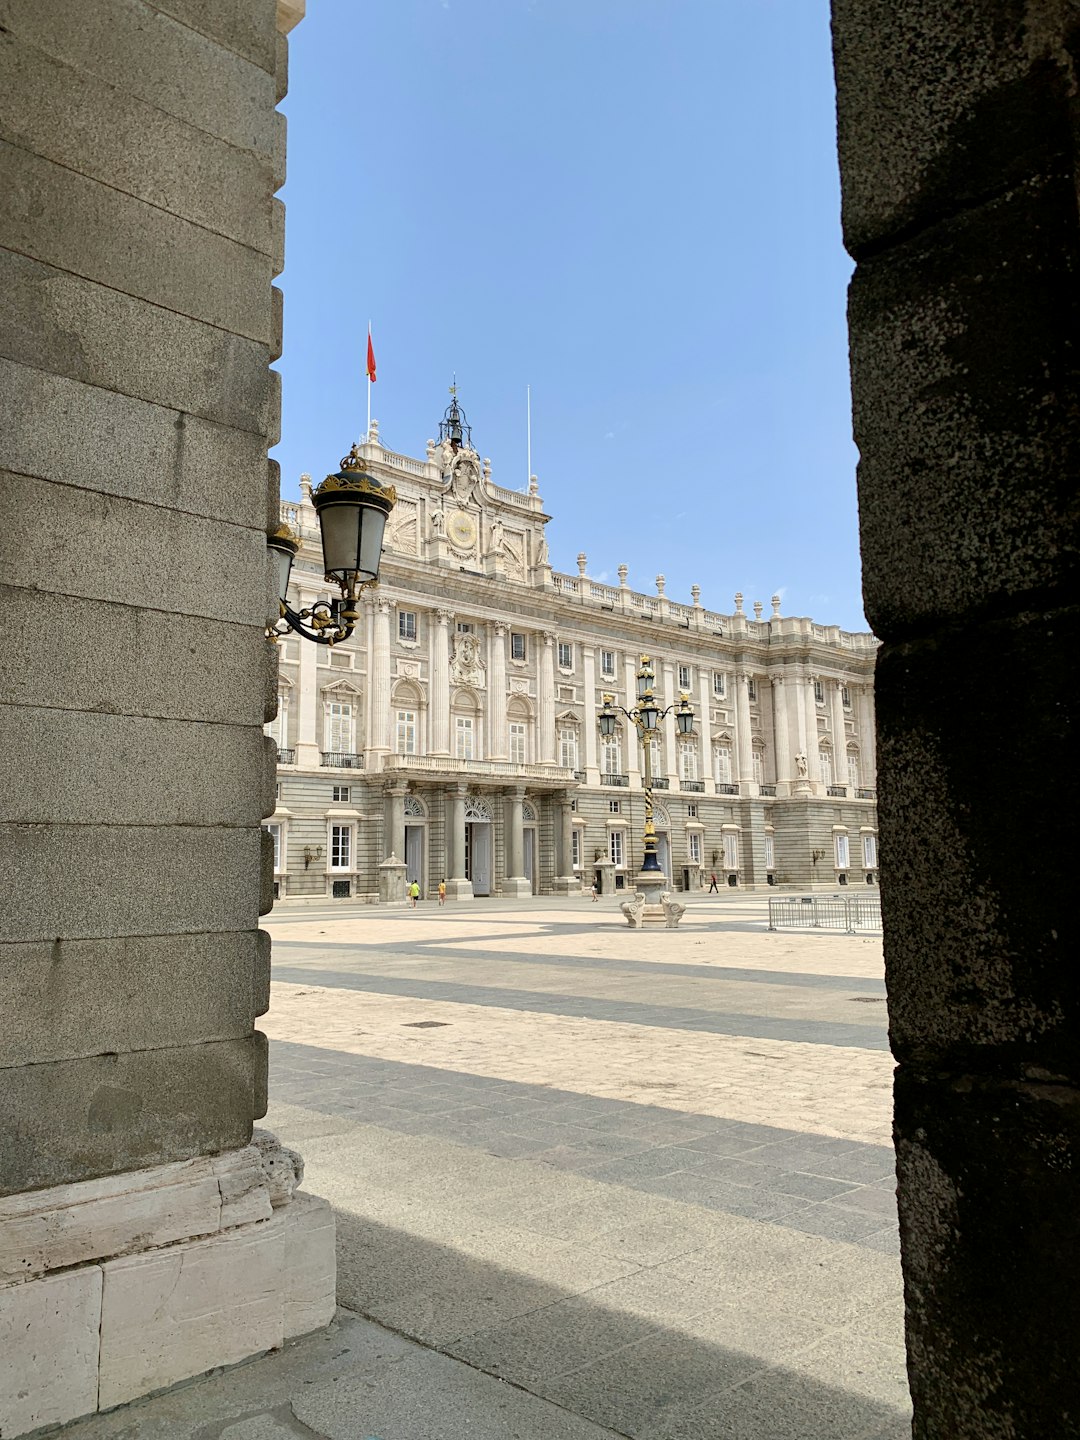 Landmark photo spot Palacio Intercambiador de Moncloa